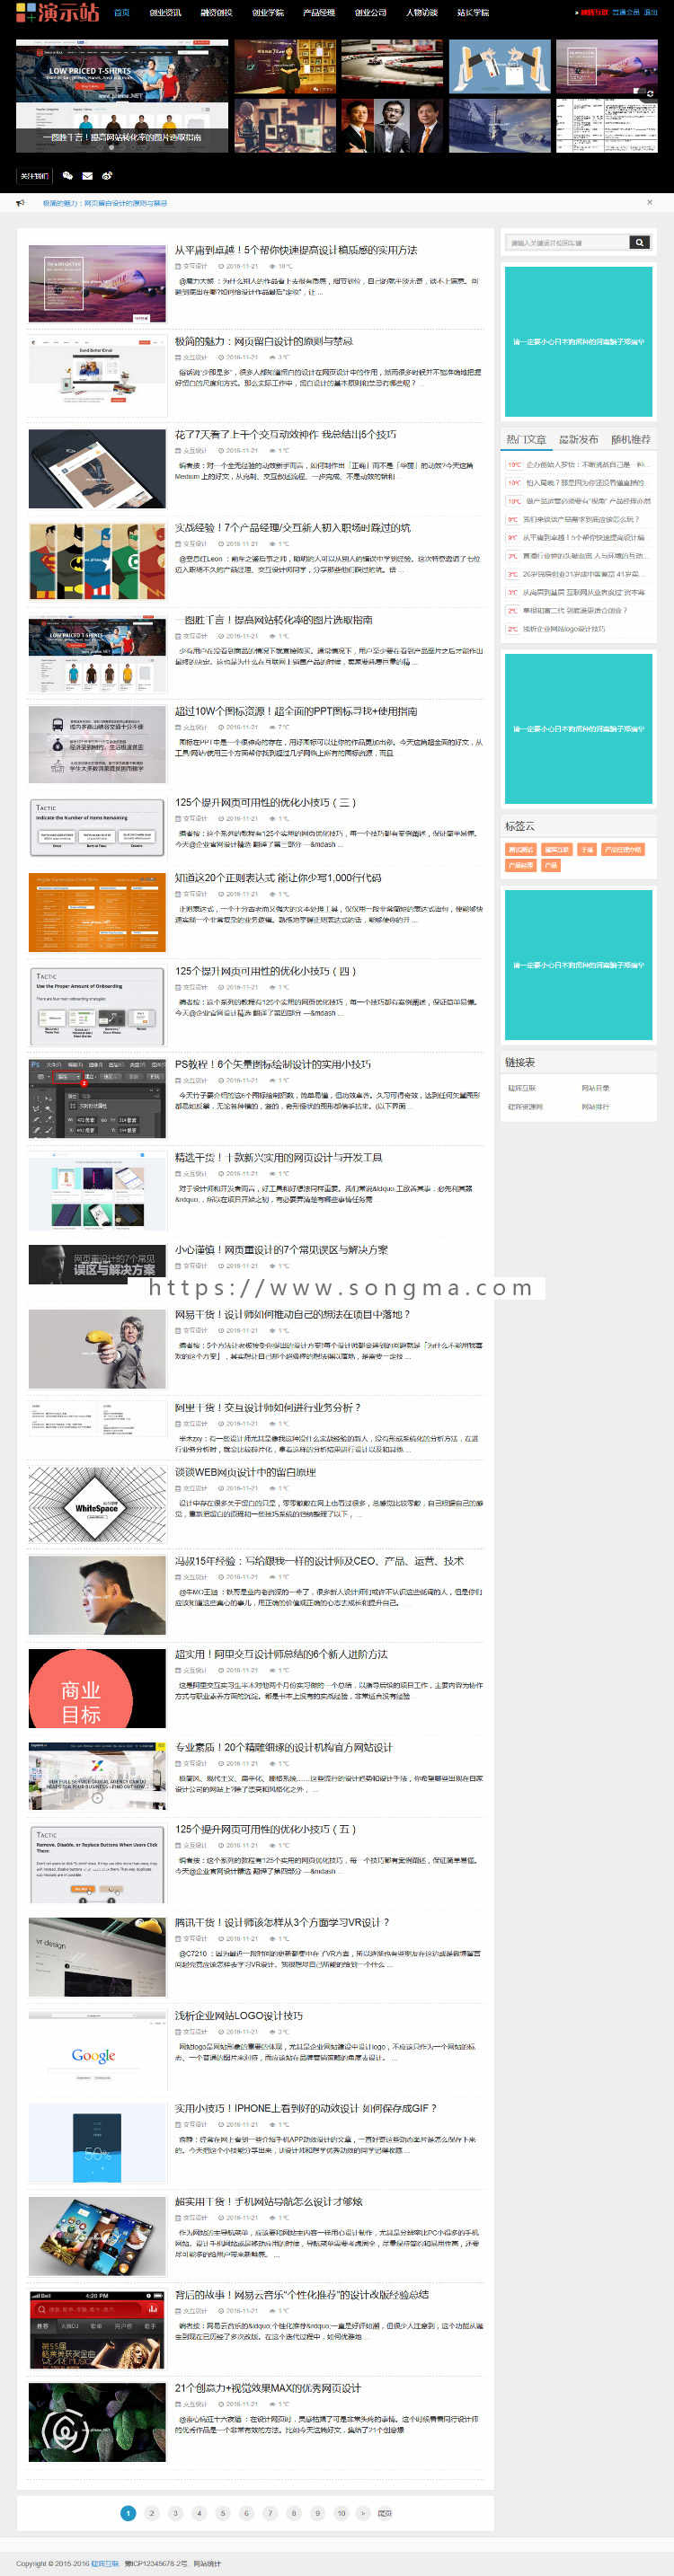 博客资讯新闻文章图片帝国CMS自适应HTML5响应式手机网站模板整站